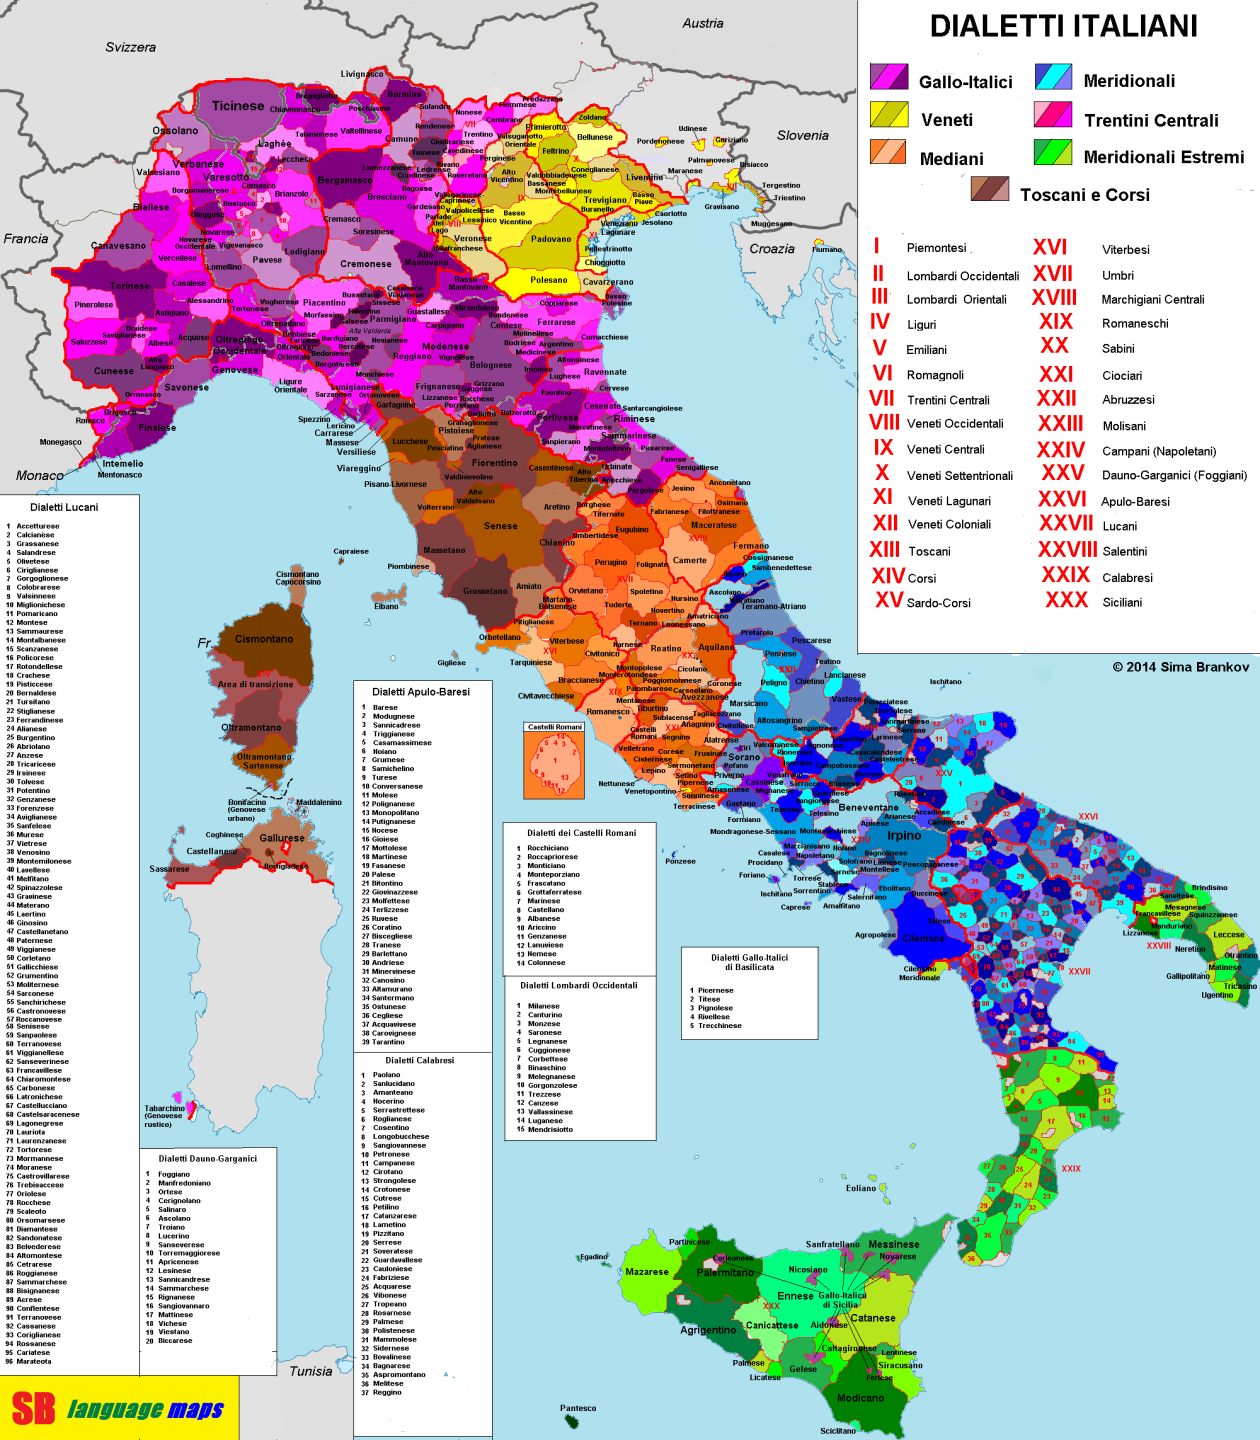 Dialetti italiani